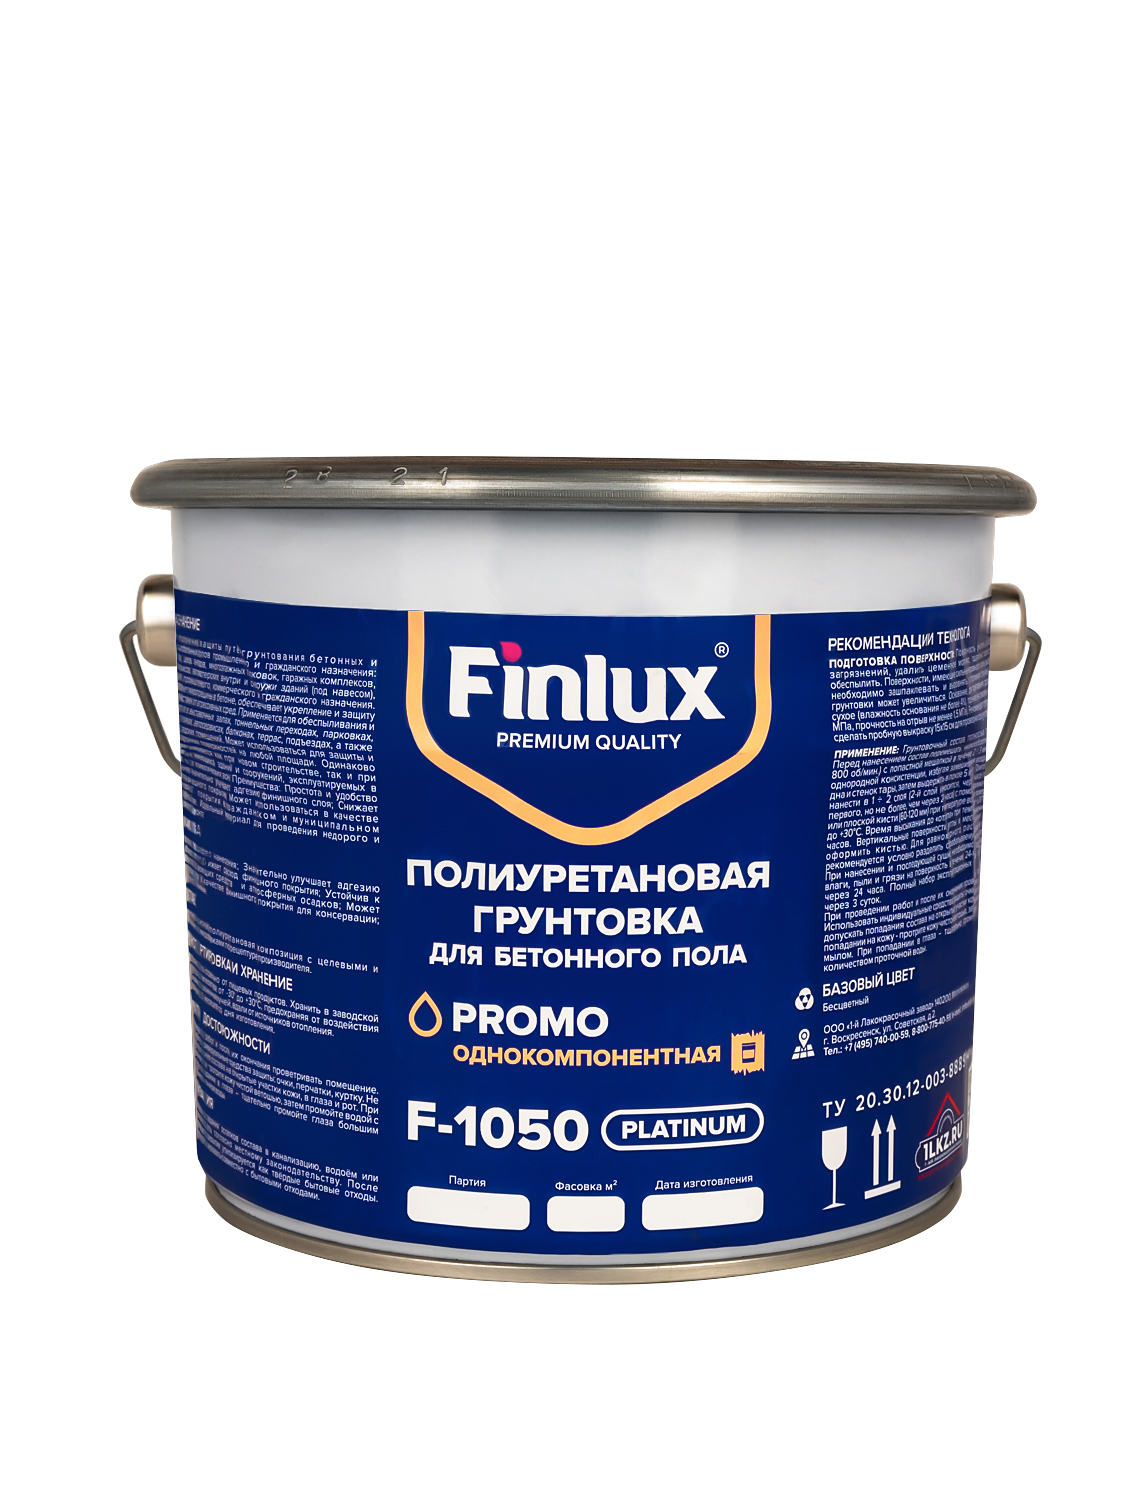 Полиуретановая грунтовка для бетонного пола Finlux F-1050Platinum 10 кв.м грунтовка алкидная быстросохнущая finlux гф 021 красно коричневый 2 5 кг